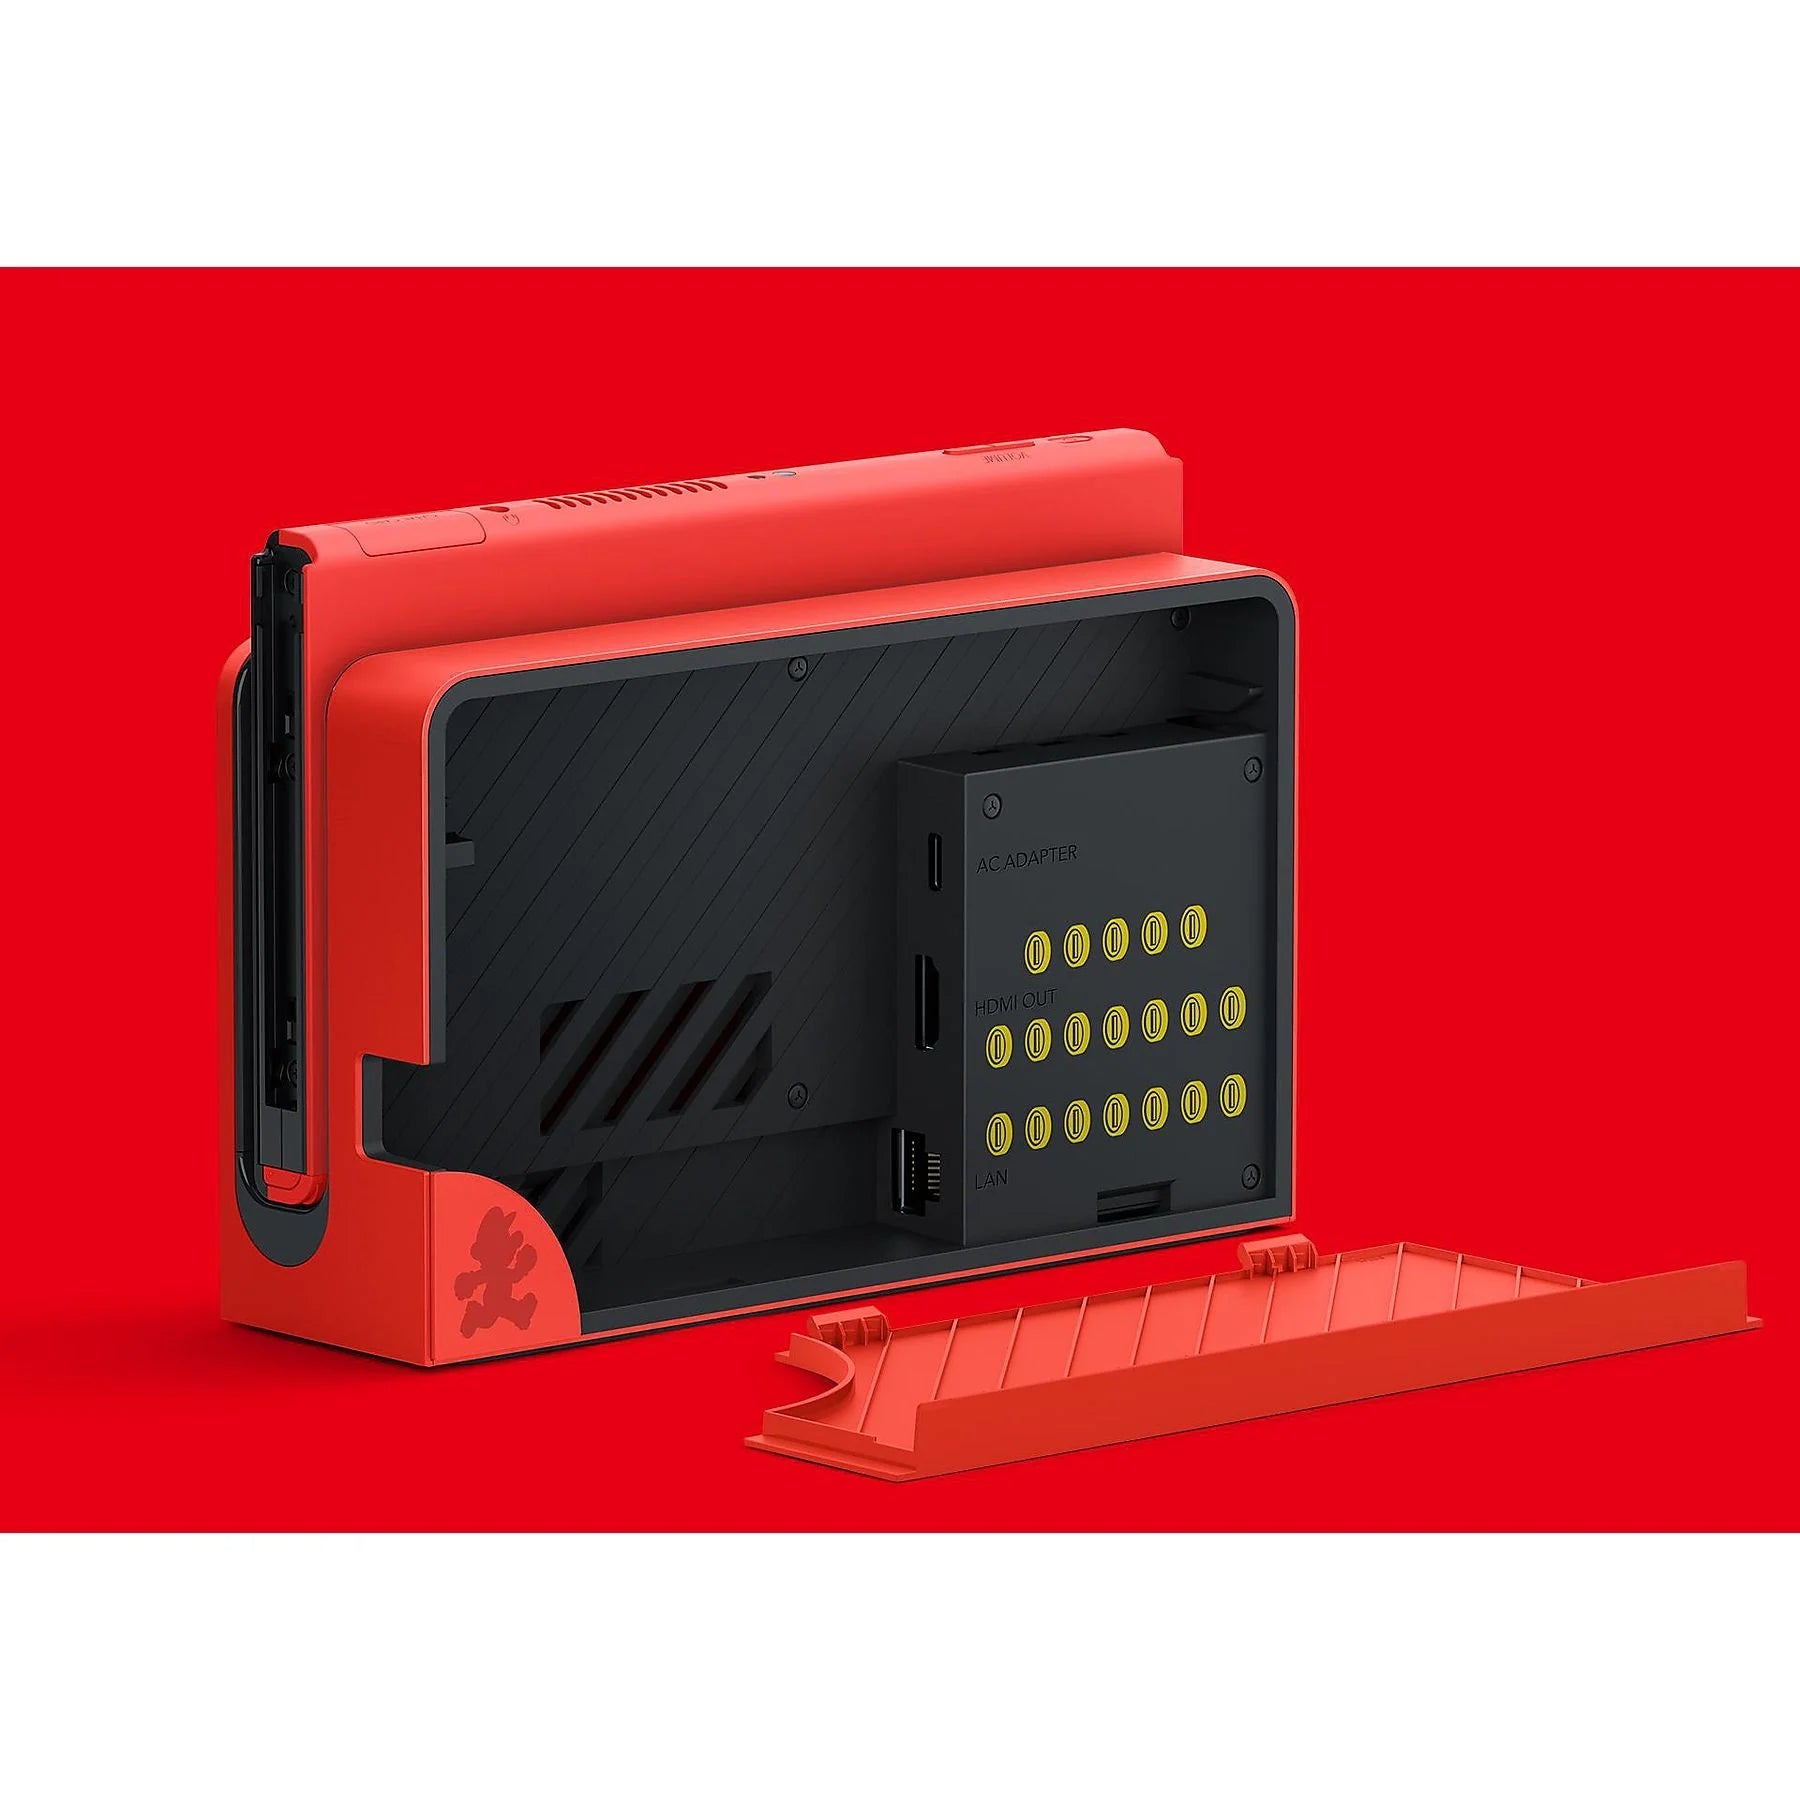 Nintendo Switch OLED Super Mario Red Edition | Lieferung vor Weihnachten - Instock Germany